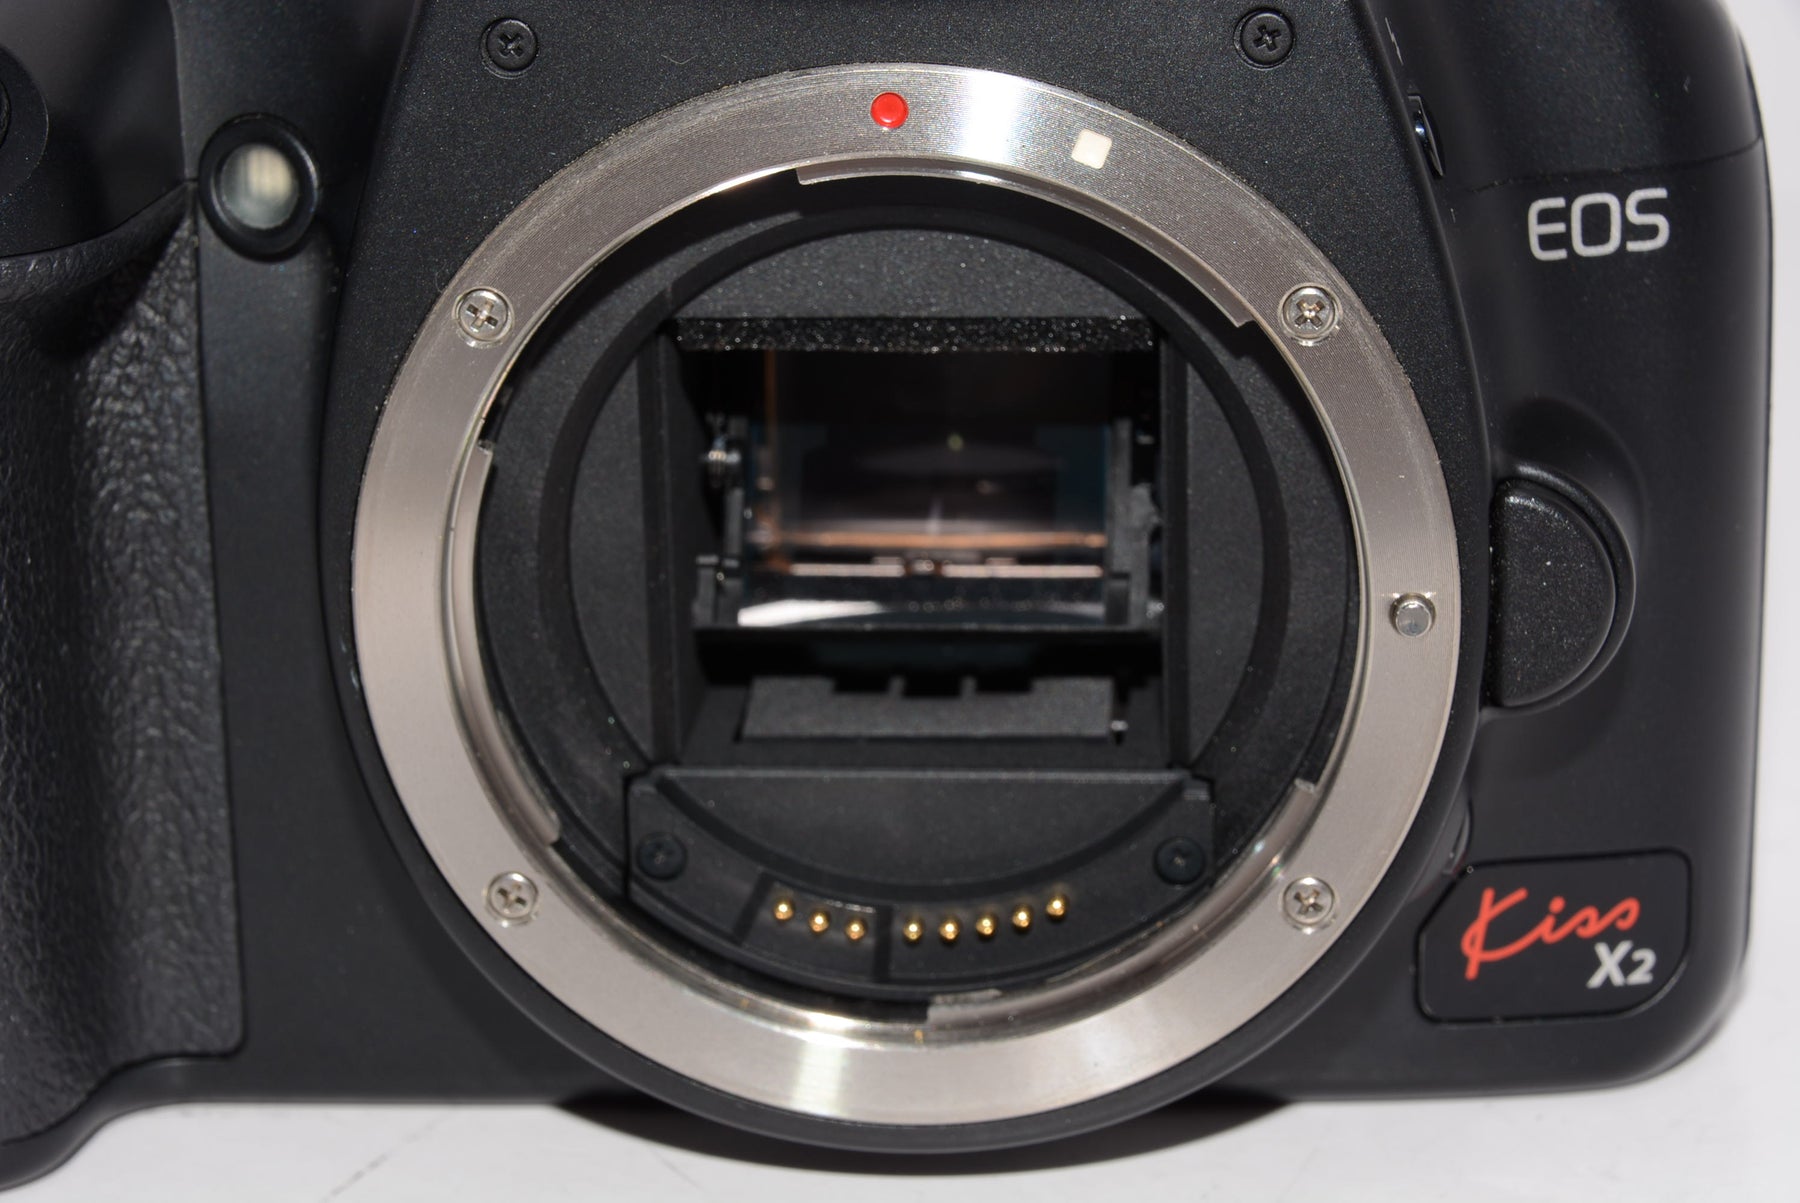 外観特上級】Canon デジタル一眼レフカメラ EOS Kiss X2 ボディ KISSX2-BODY